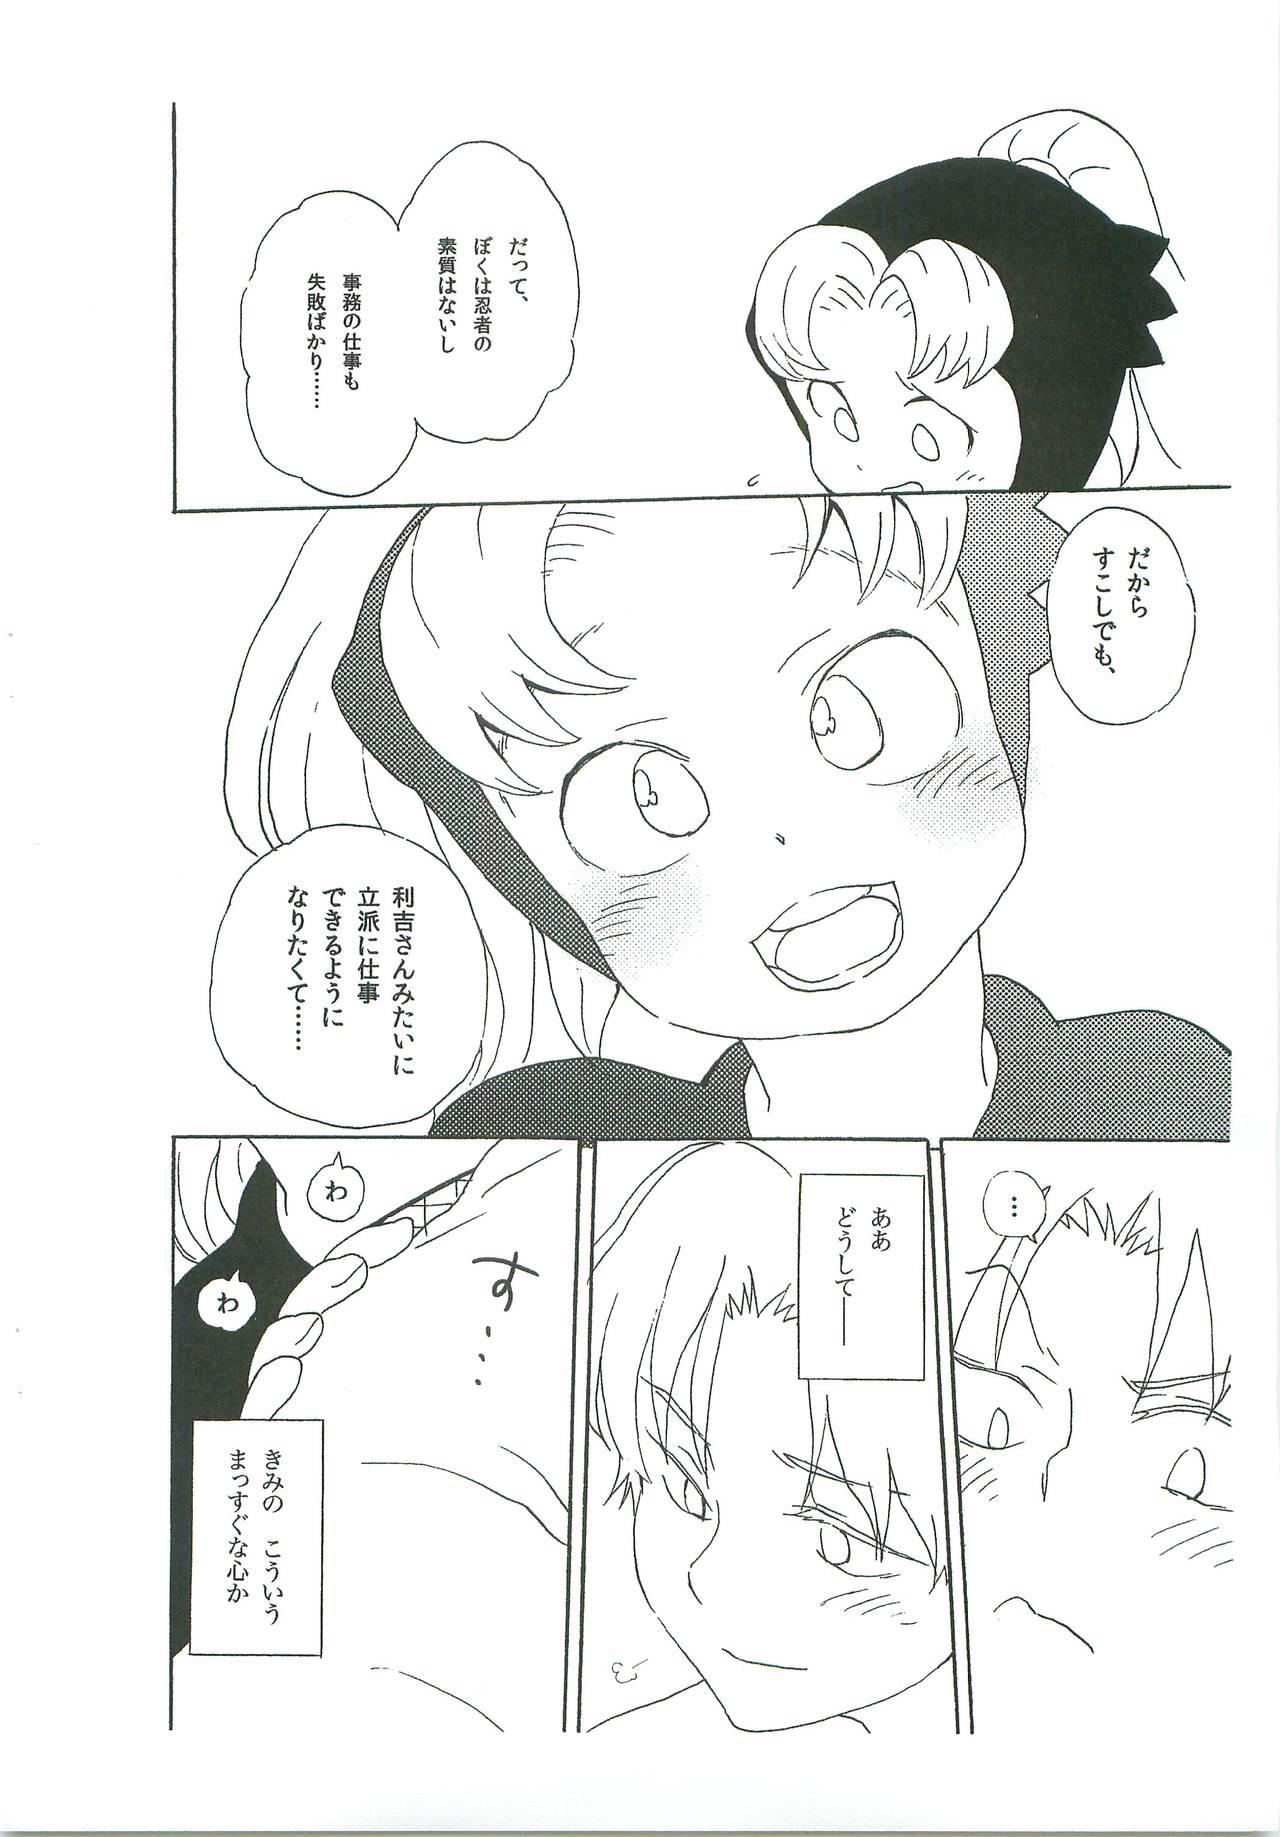 Best Blowjob Ever Komatsuda-kun Kimitte Yatsu wa! - Nintama rantarou 8teenxxx - Page 9